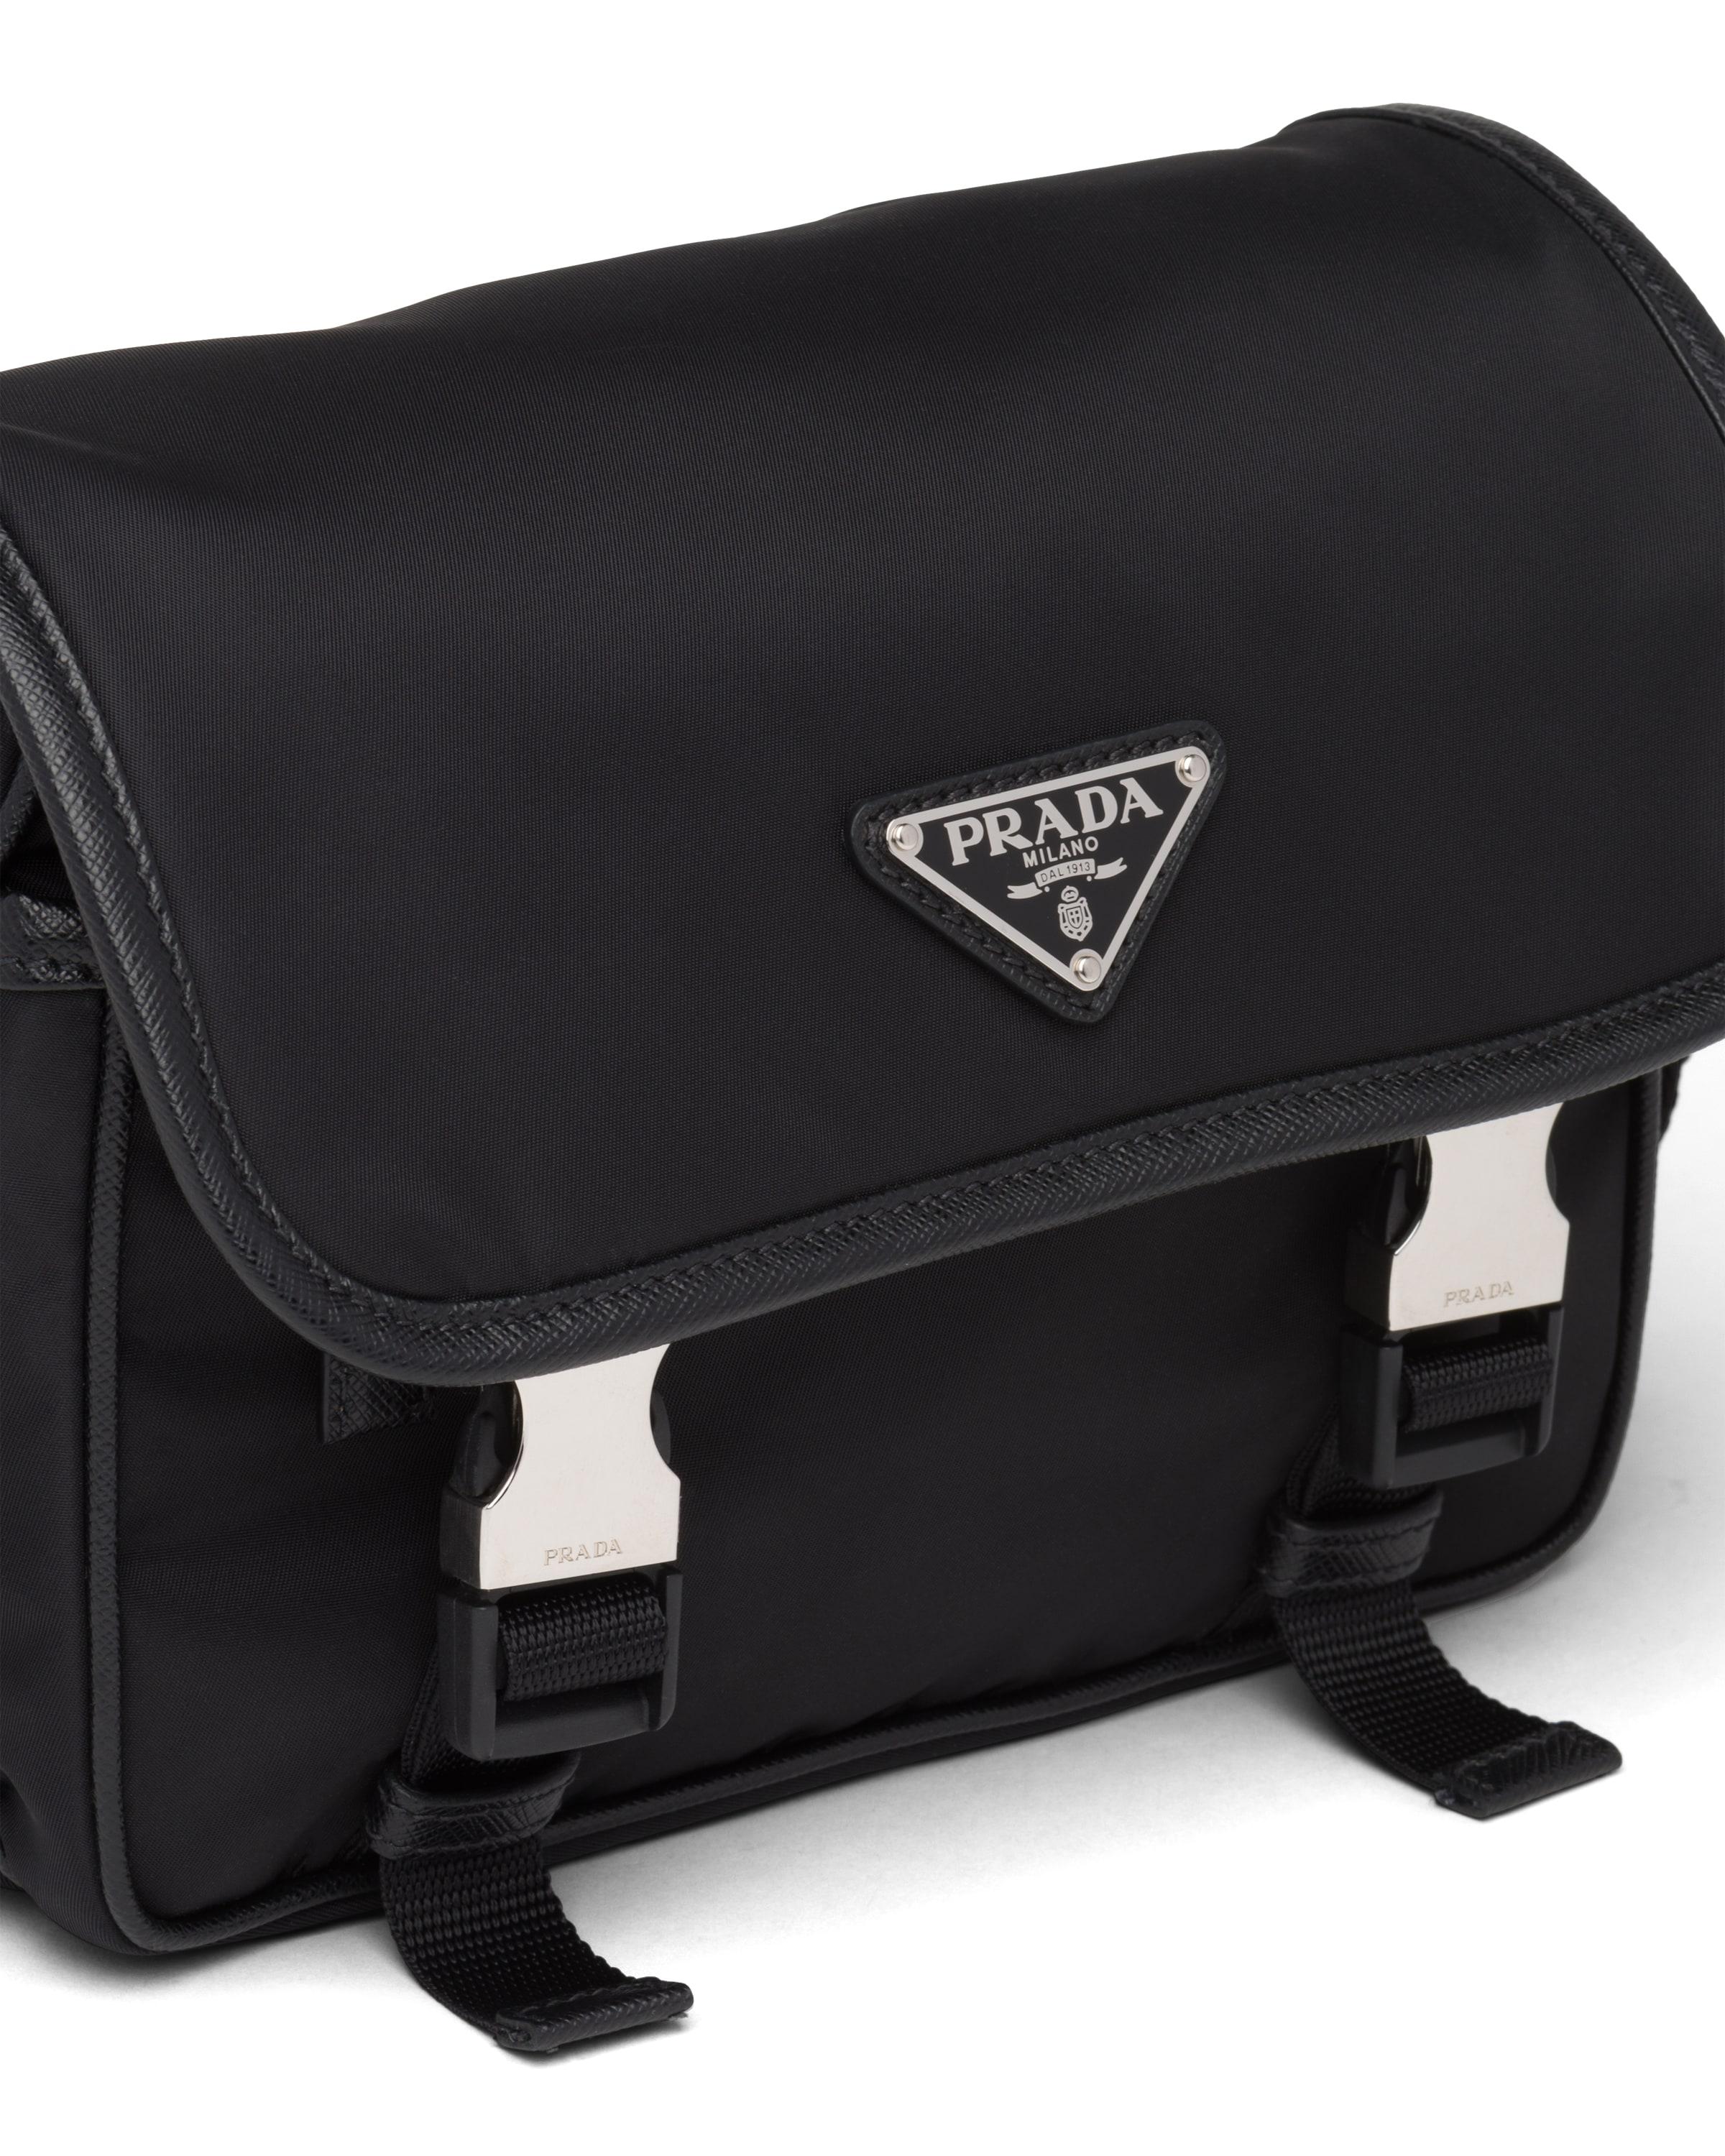 re-nylon and saffiano leather briefcase